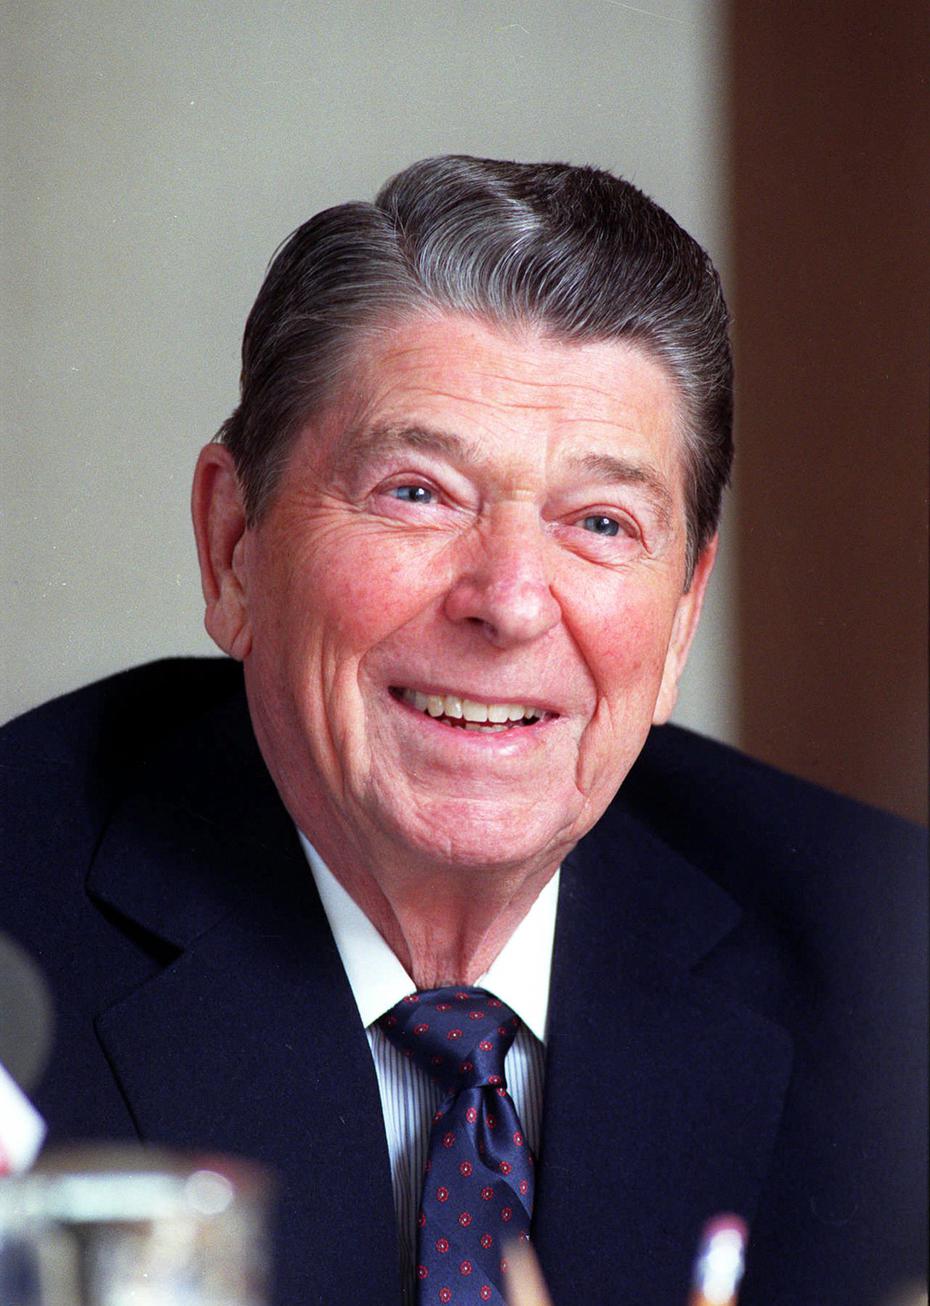 Ronald Wilson Reagan fue un actor y político estadounidense, el cuadragésimo presidente de los Estados Unidos entre 1981 y 1989 y el trigésimo tercer gobernador del estado de California entre 1967 y 1975. En el 1985 se sometió a una intervención quirúrgica en la que le fue extirpado un tumor benigno del colon.